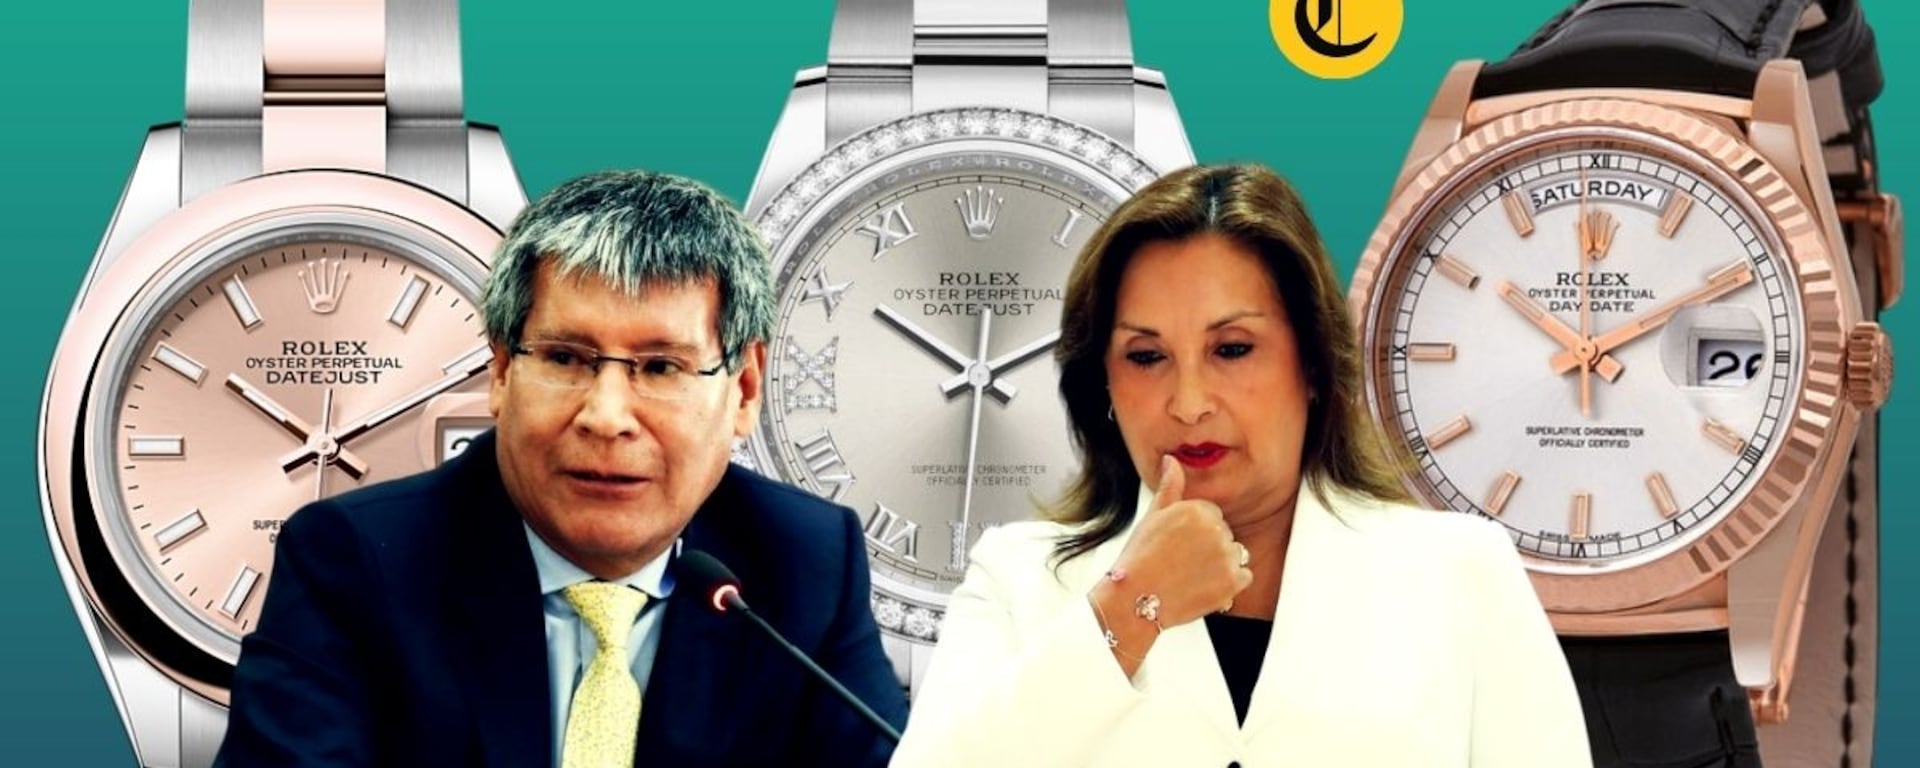 Dina Boluarte: Fiscalía advierte que hay “serios indicios” de que Rolex y joyas “fueron entregados como beneficio”